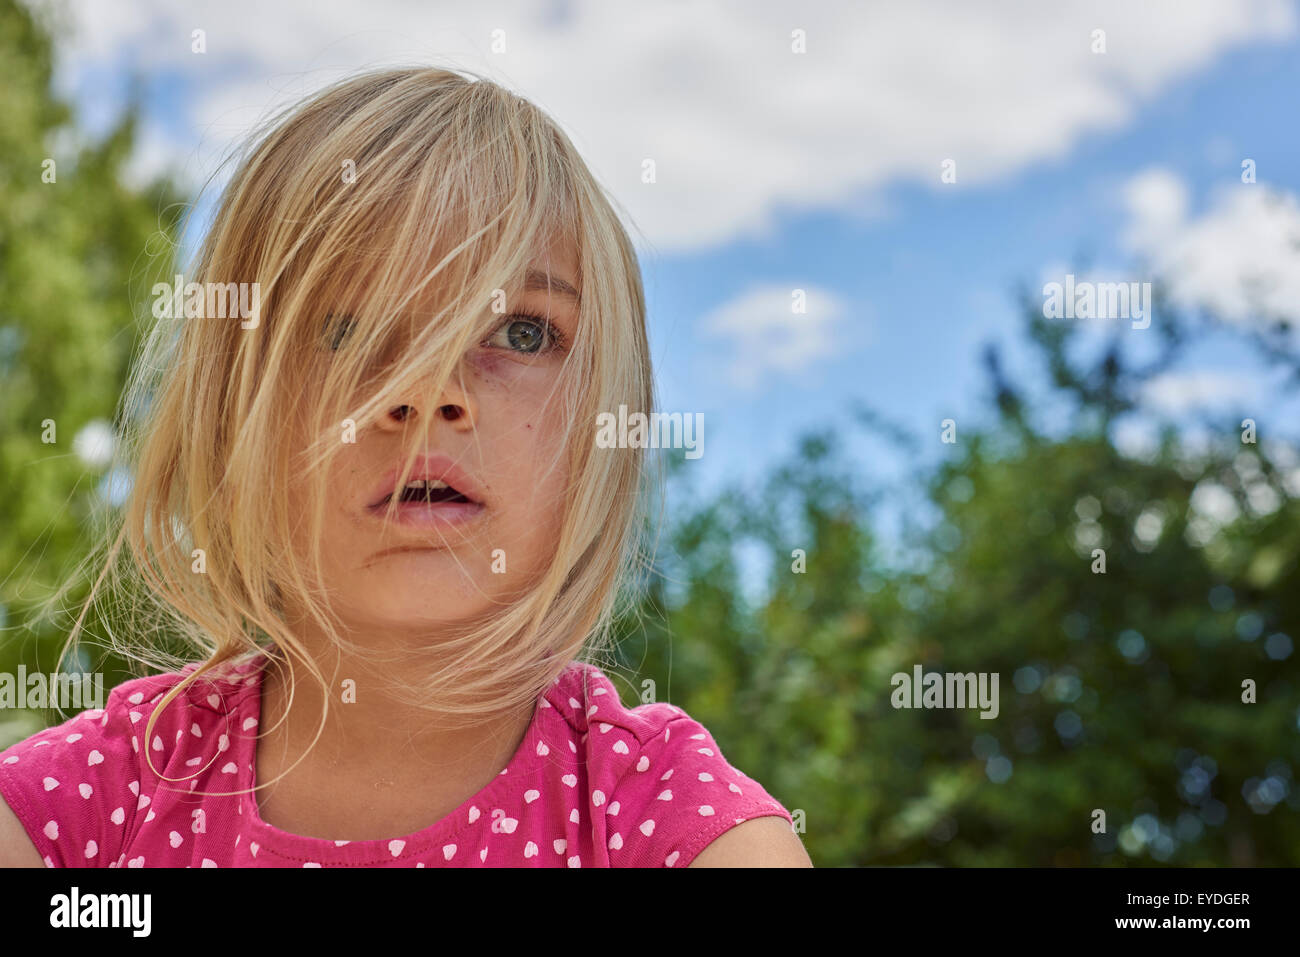 Ritratto di stupito, sconvolto, sorpreso bambino ragazza bionda al di fuori, estate, backyard, parco, giardino con alberi sullo sfondo Foto Stock